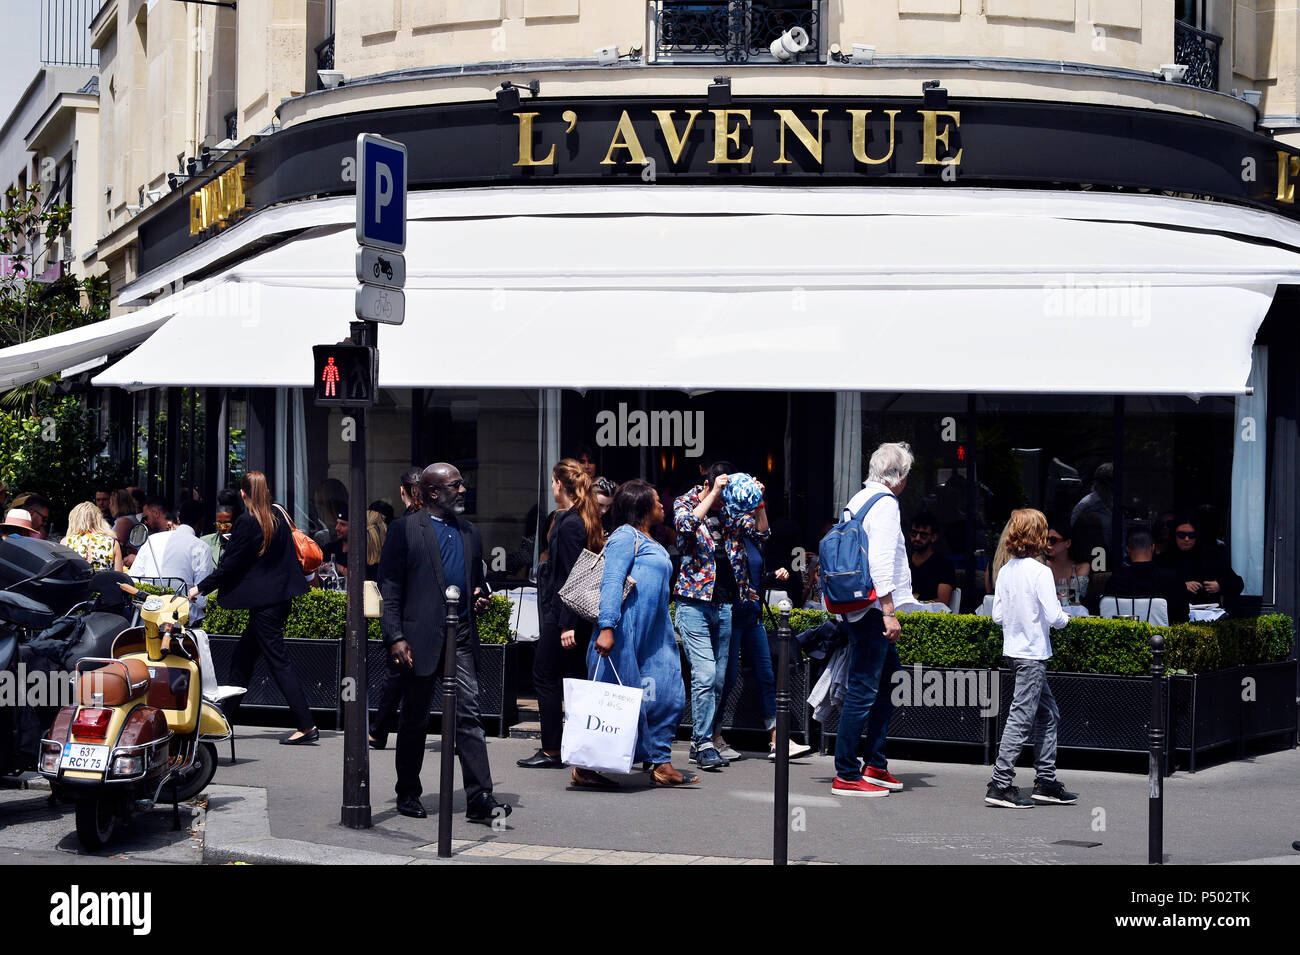 L'Avenue Restaurant - Paris - France Stock Photo